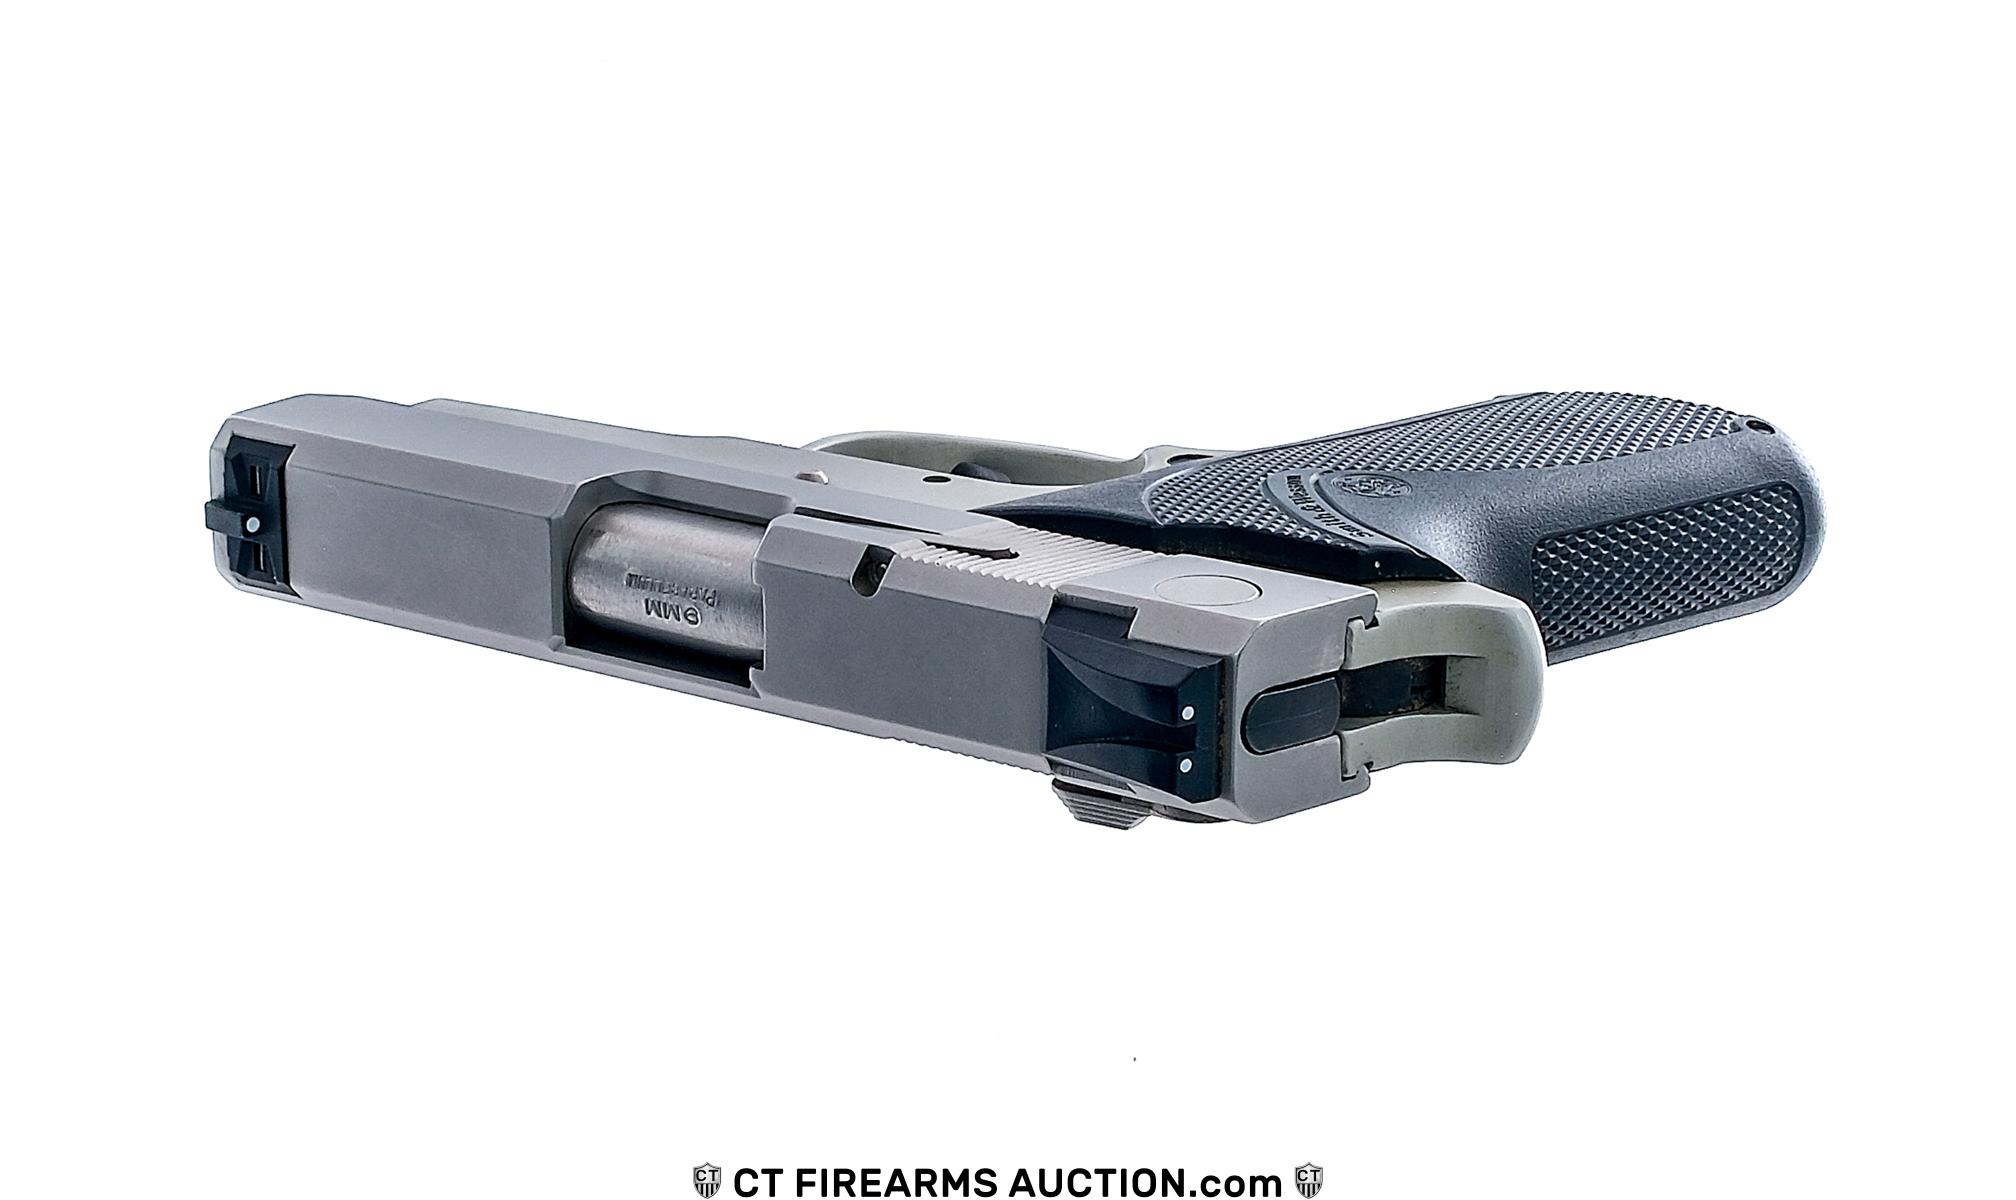 Smith & Wesson 908S 9mm Semi Auto Pistol